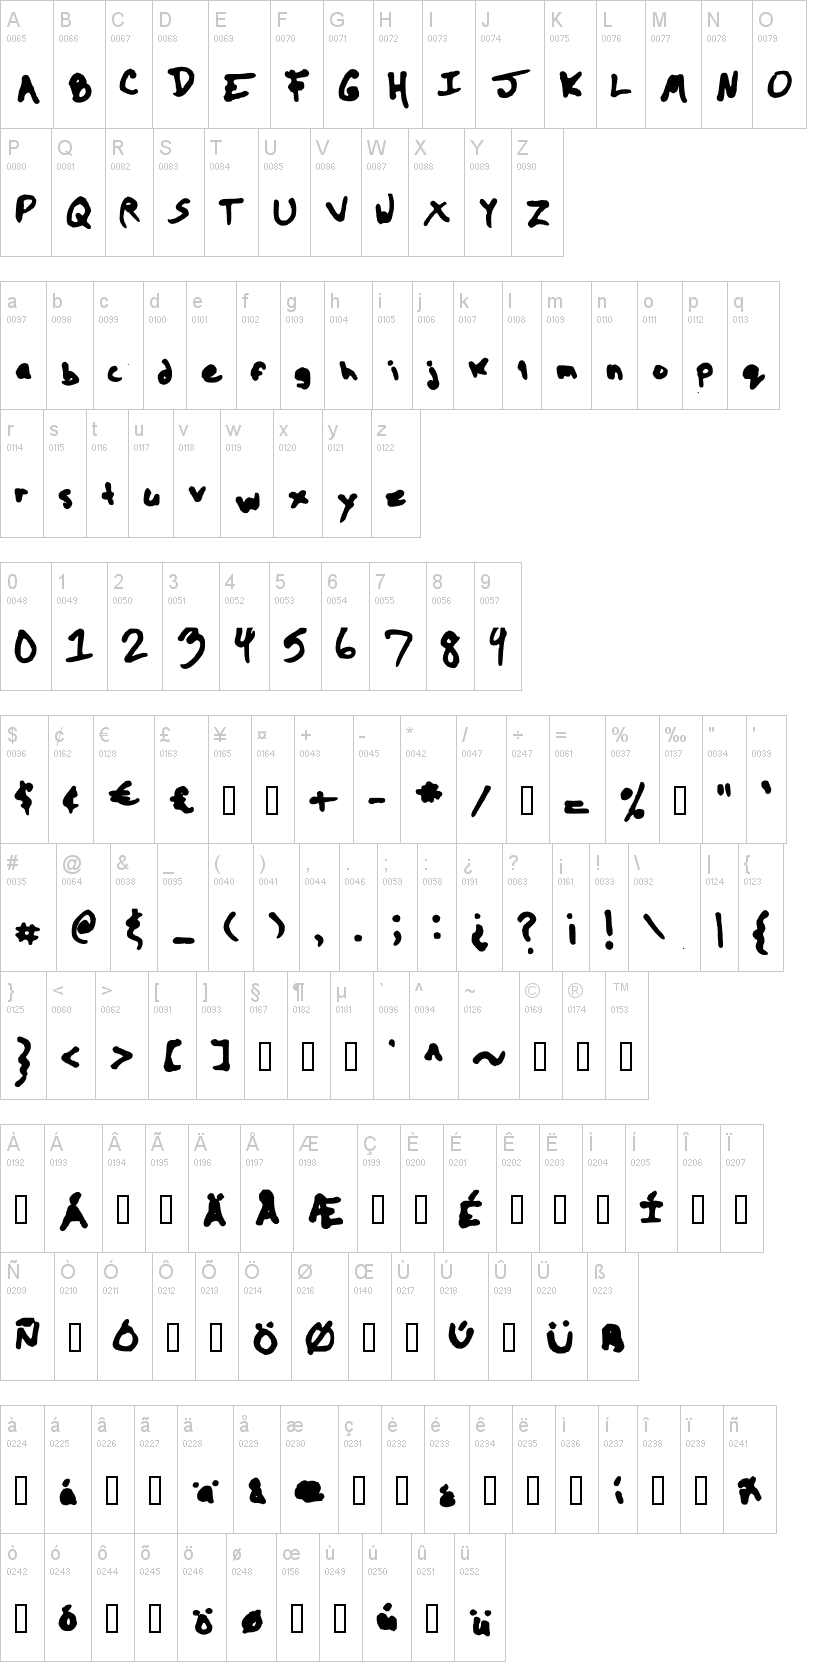 The Kool Font